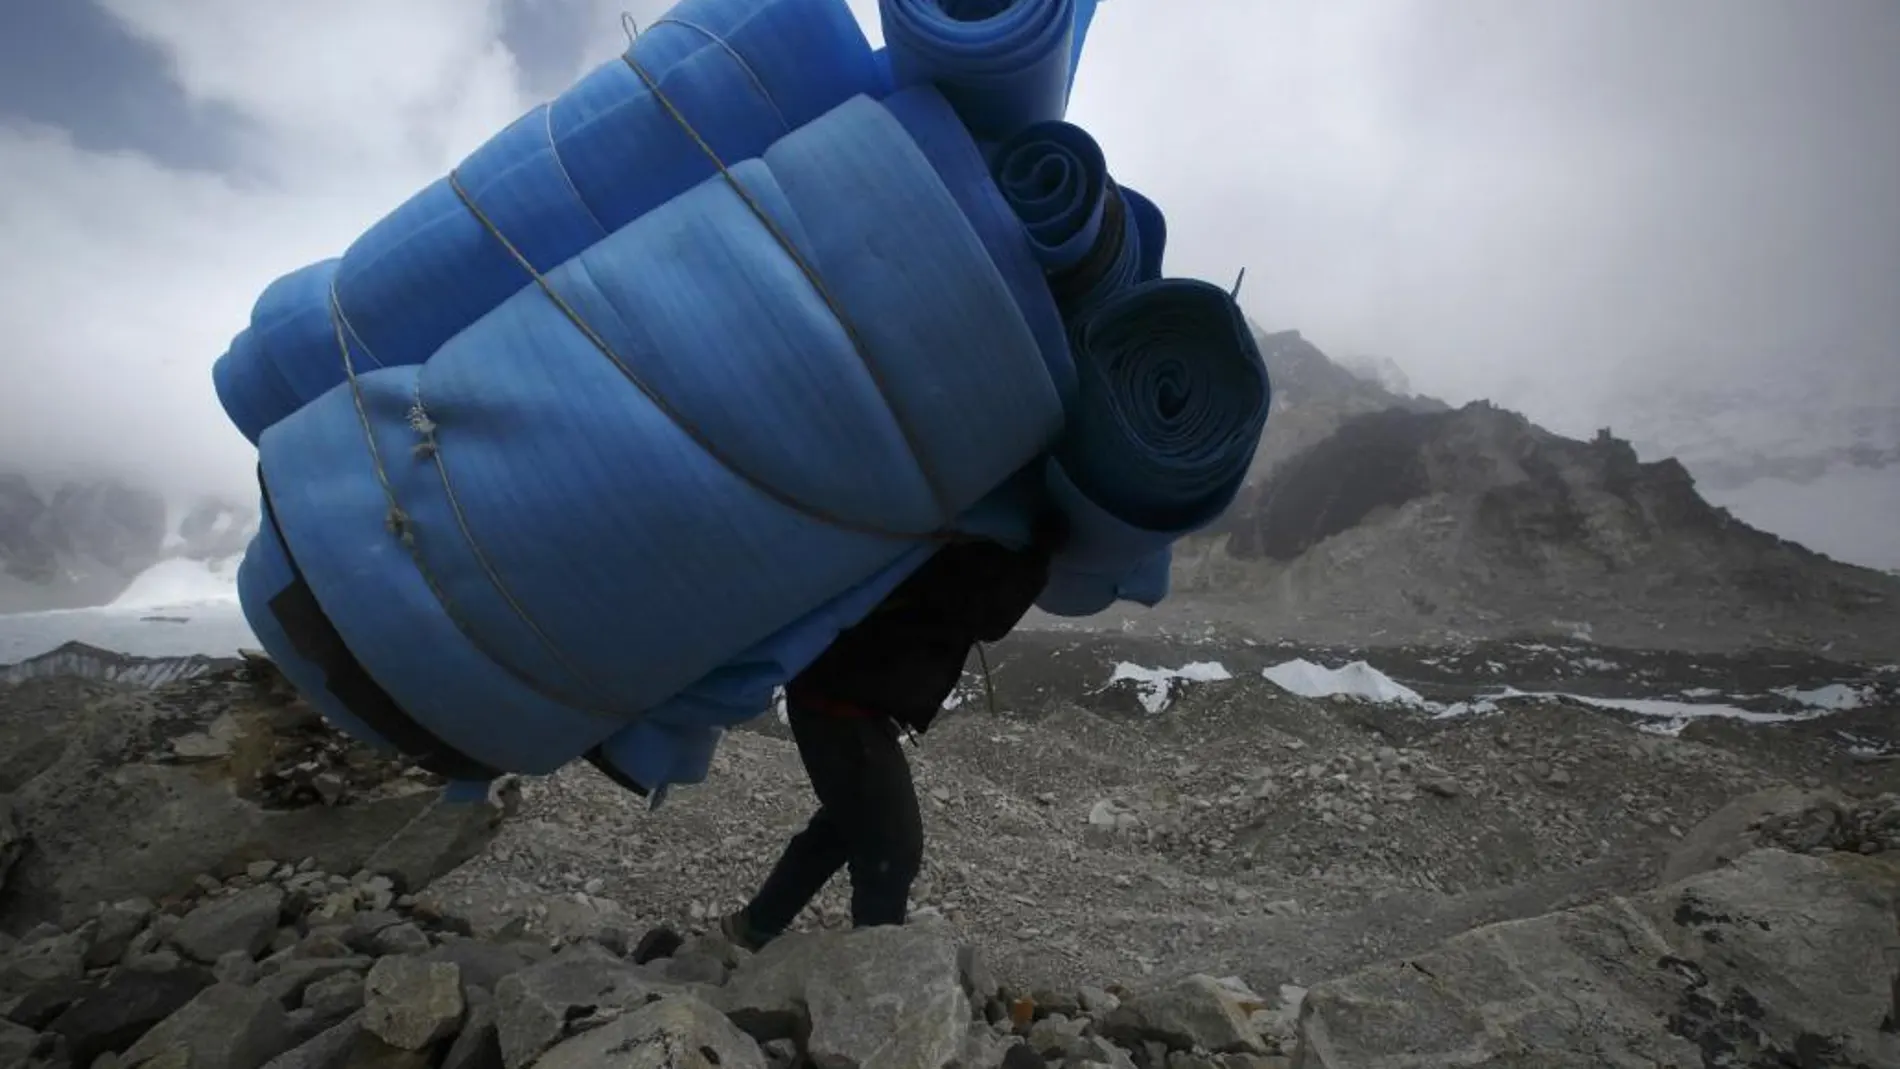 Los sherpas se encargan de acarrear el material de las expediciones en el Himalaya y el Karakorum